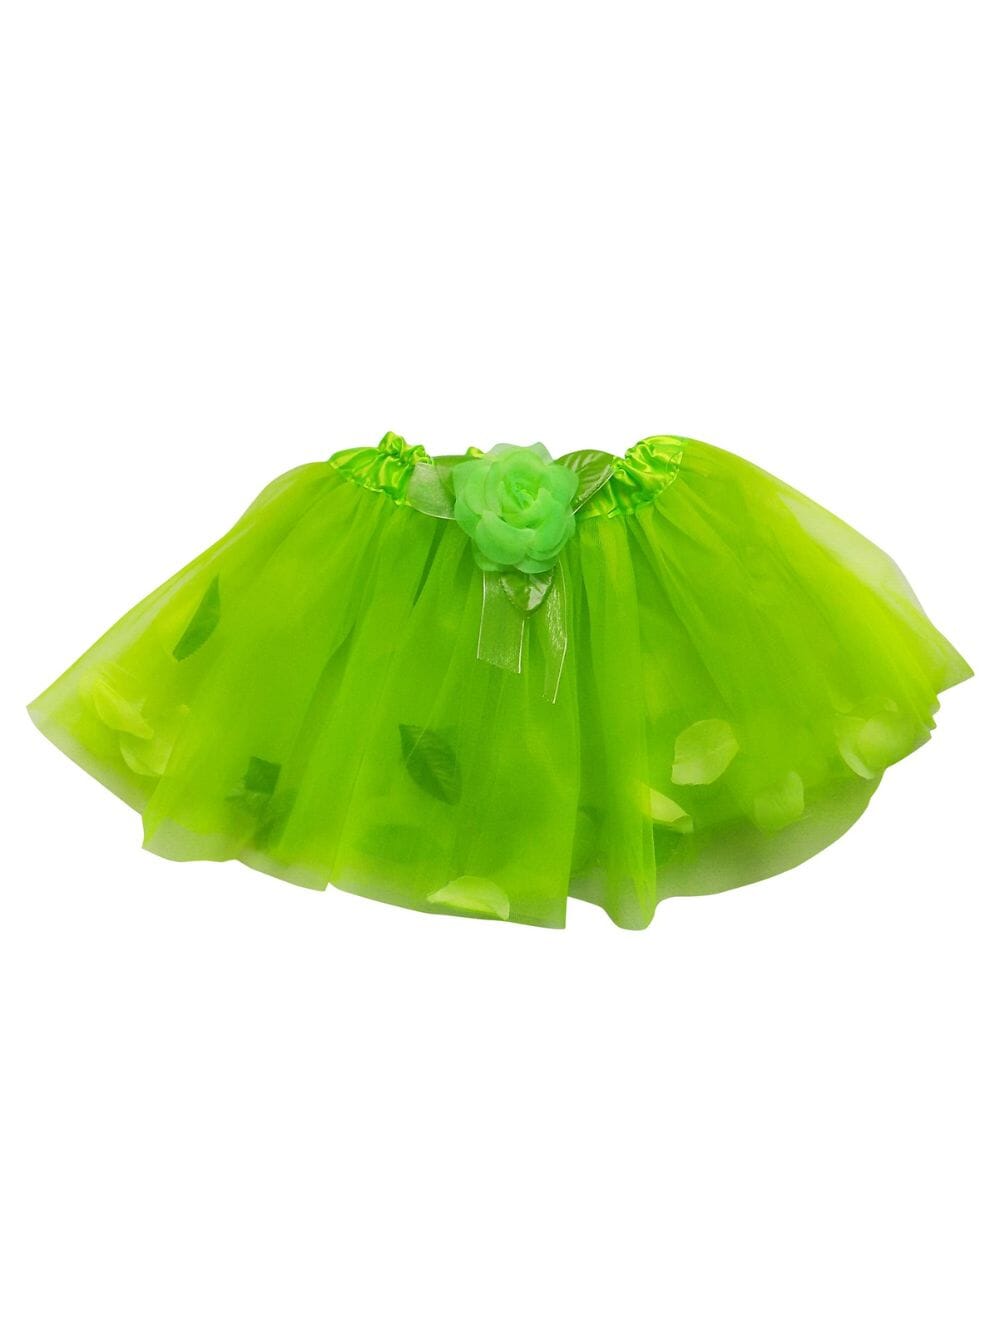 Lime Green Petal Tutu Skirt - Kids Size Tulle Basic Ballet Dance Costume Girls Tutus - Sydney So Sweet